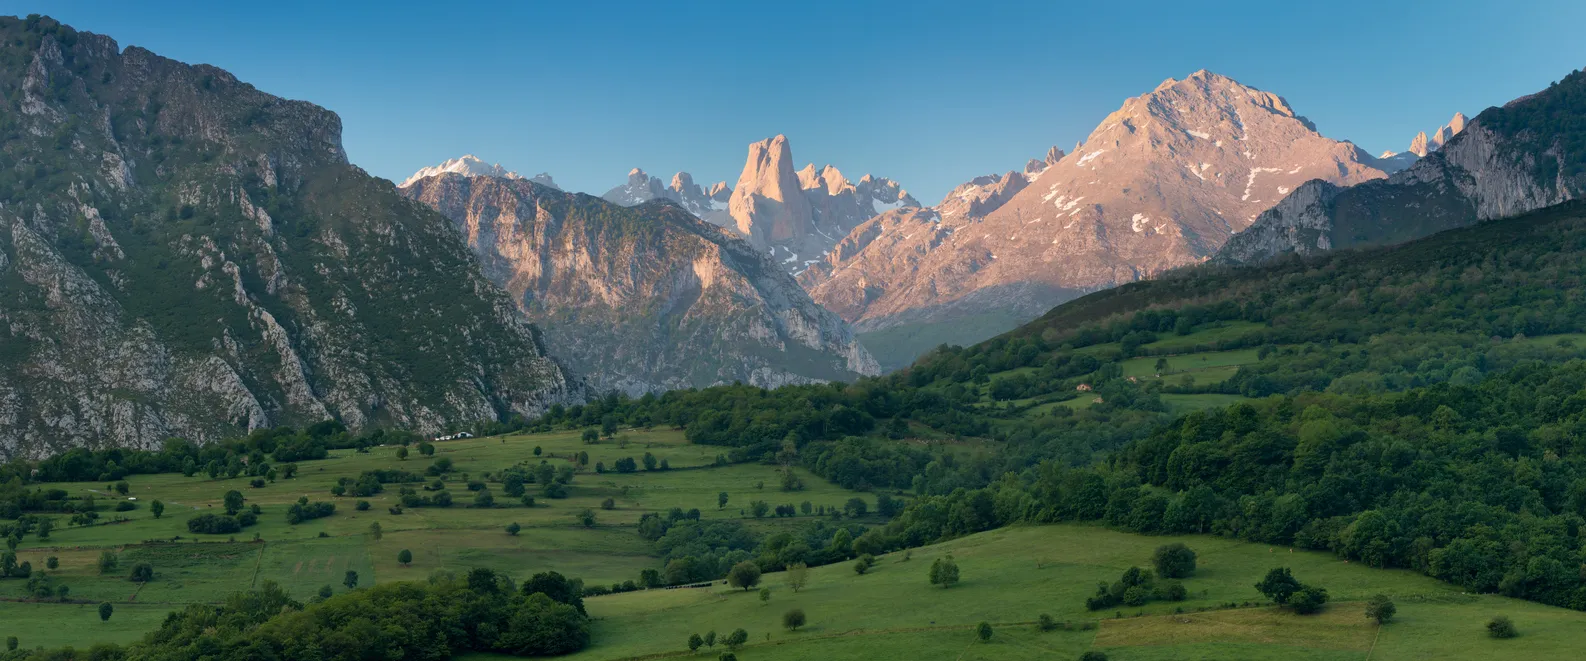 Les Picos de Europa, entre les provinces des Asturies, du León et de la Cantabrie en Espagne © iStock / Michal Balada